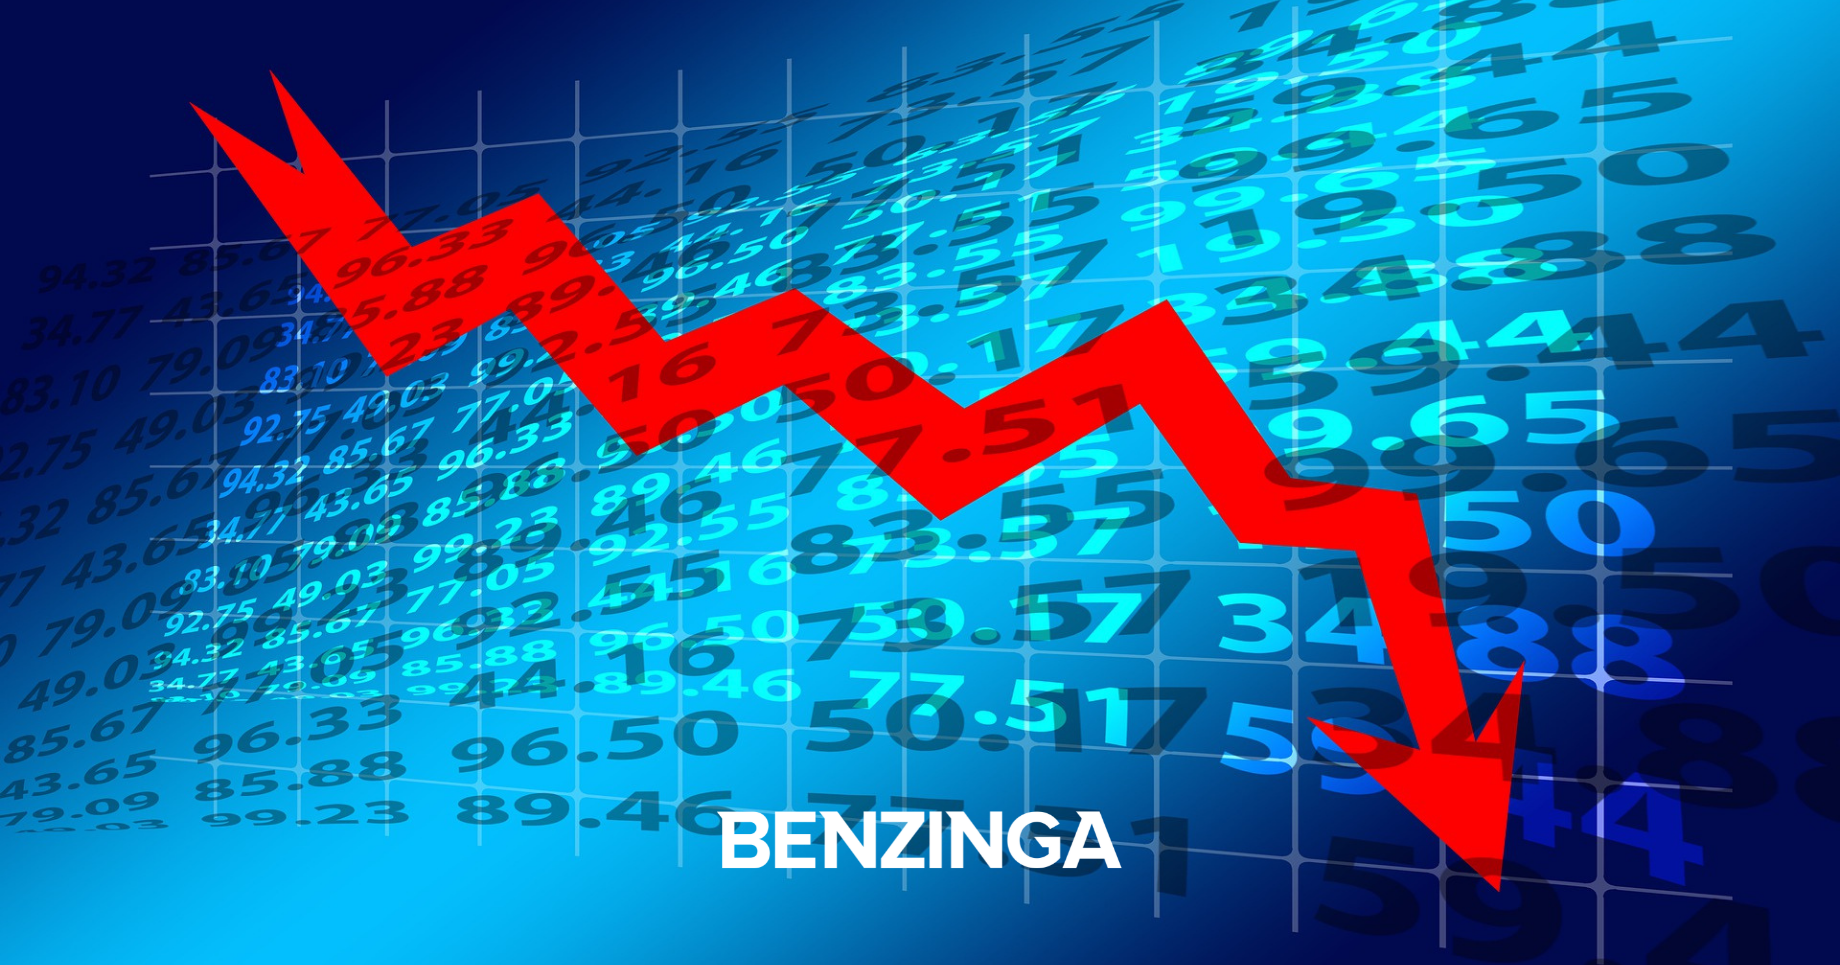 Markets Fall Following Key Economic Data - Benzinga